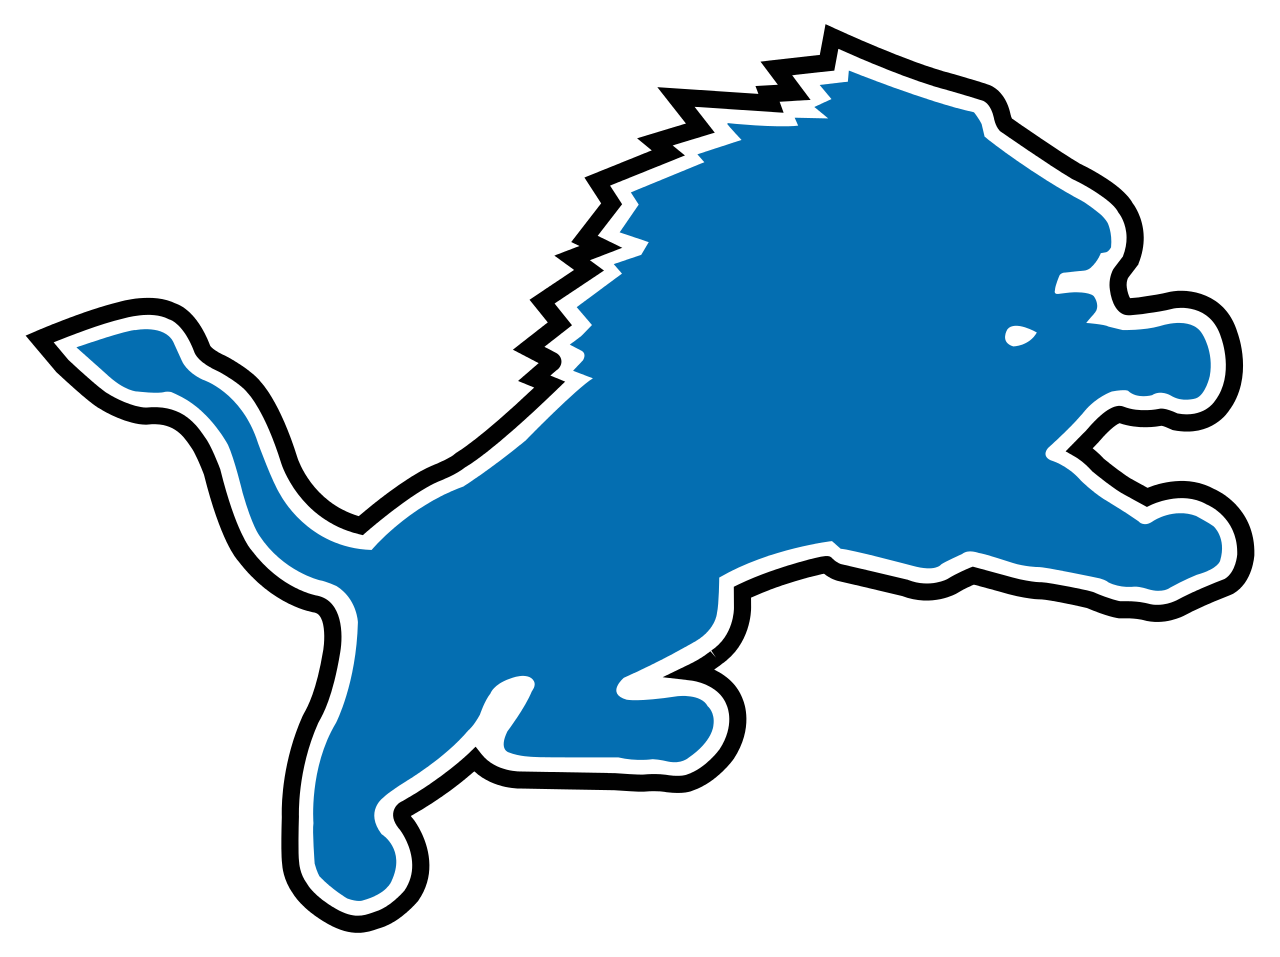 Detroit Lions Logo PNG-PlusPN